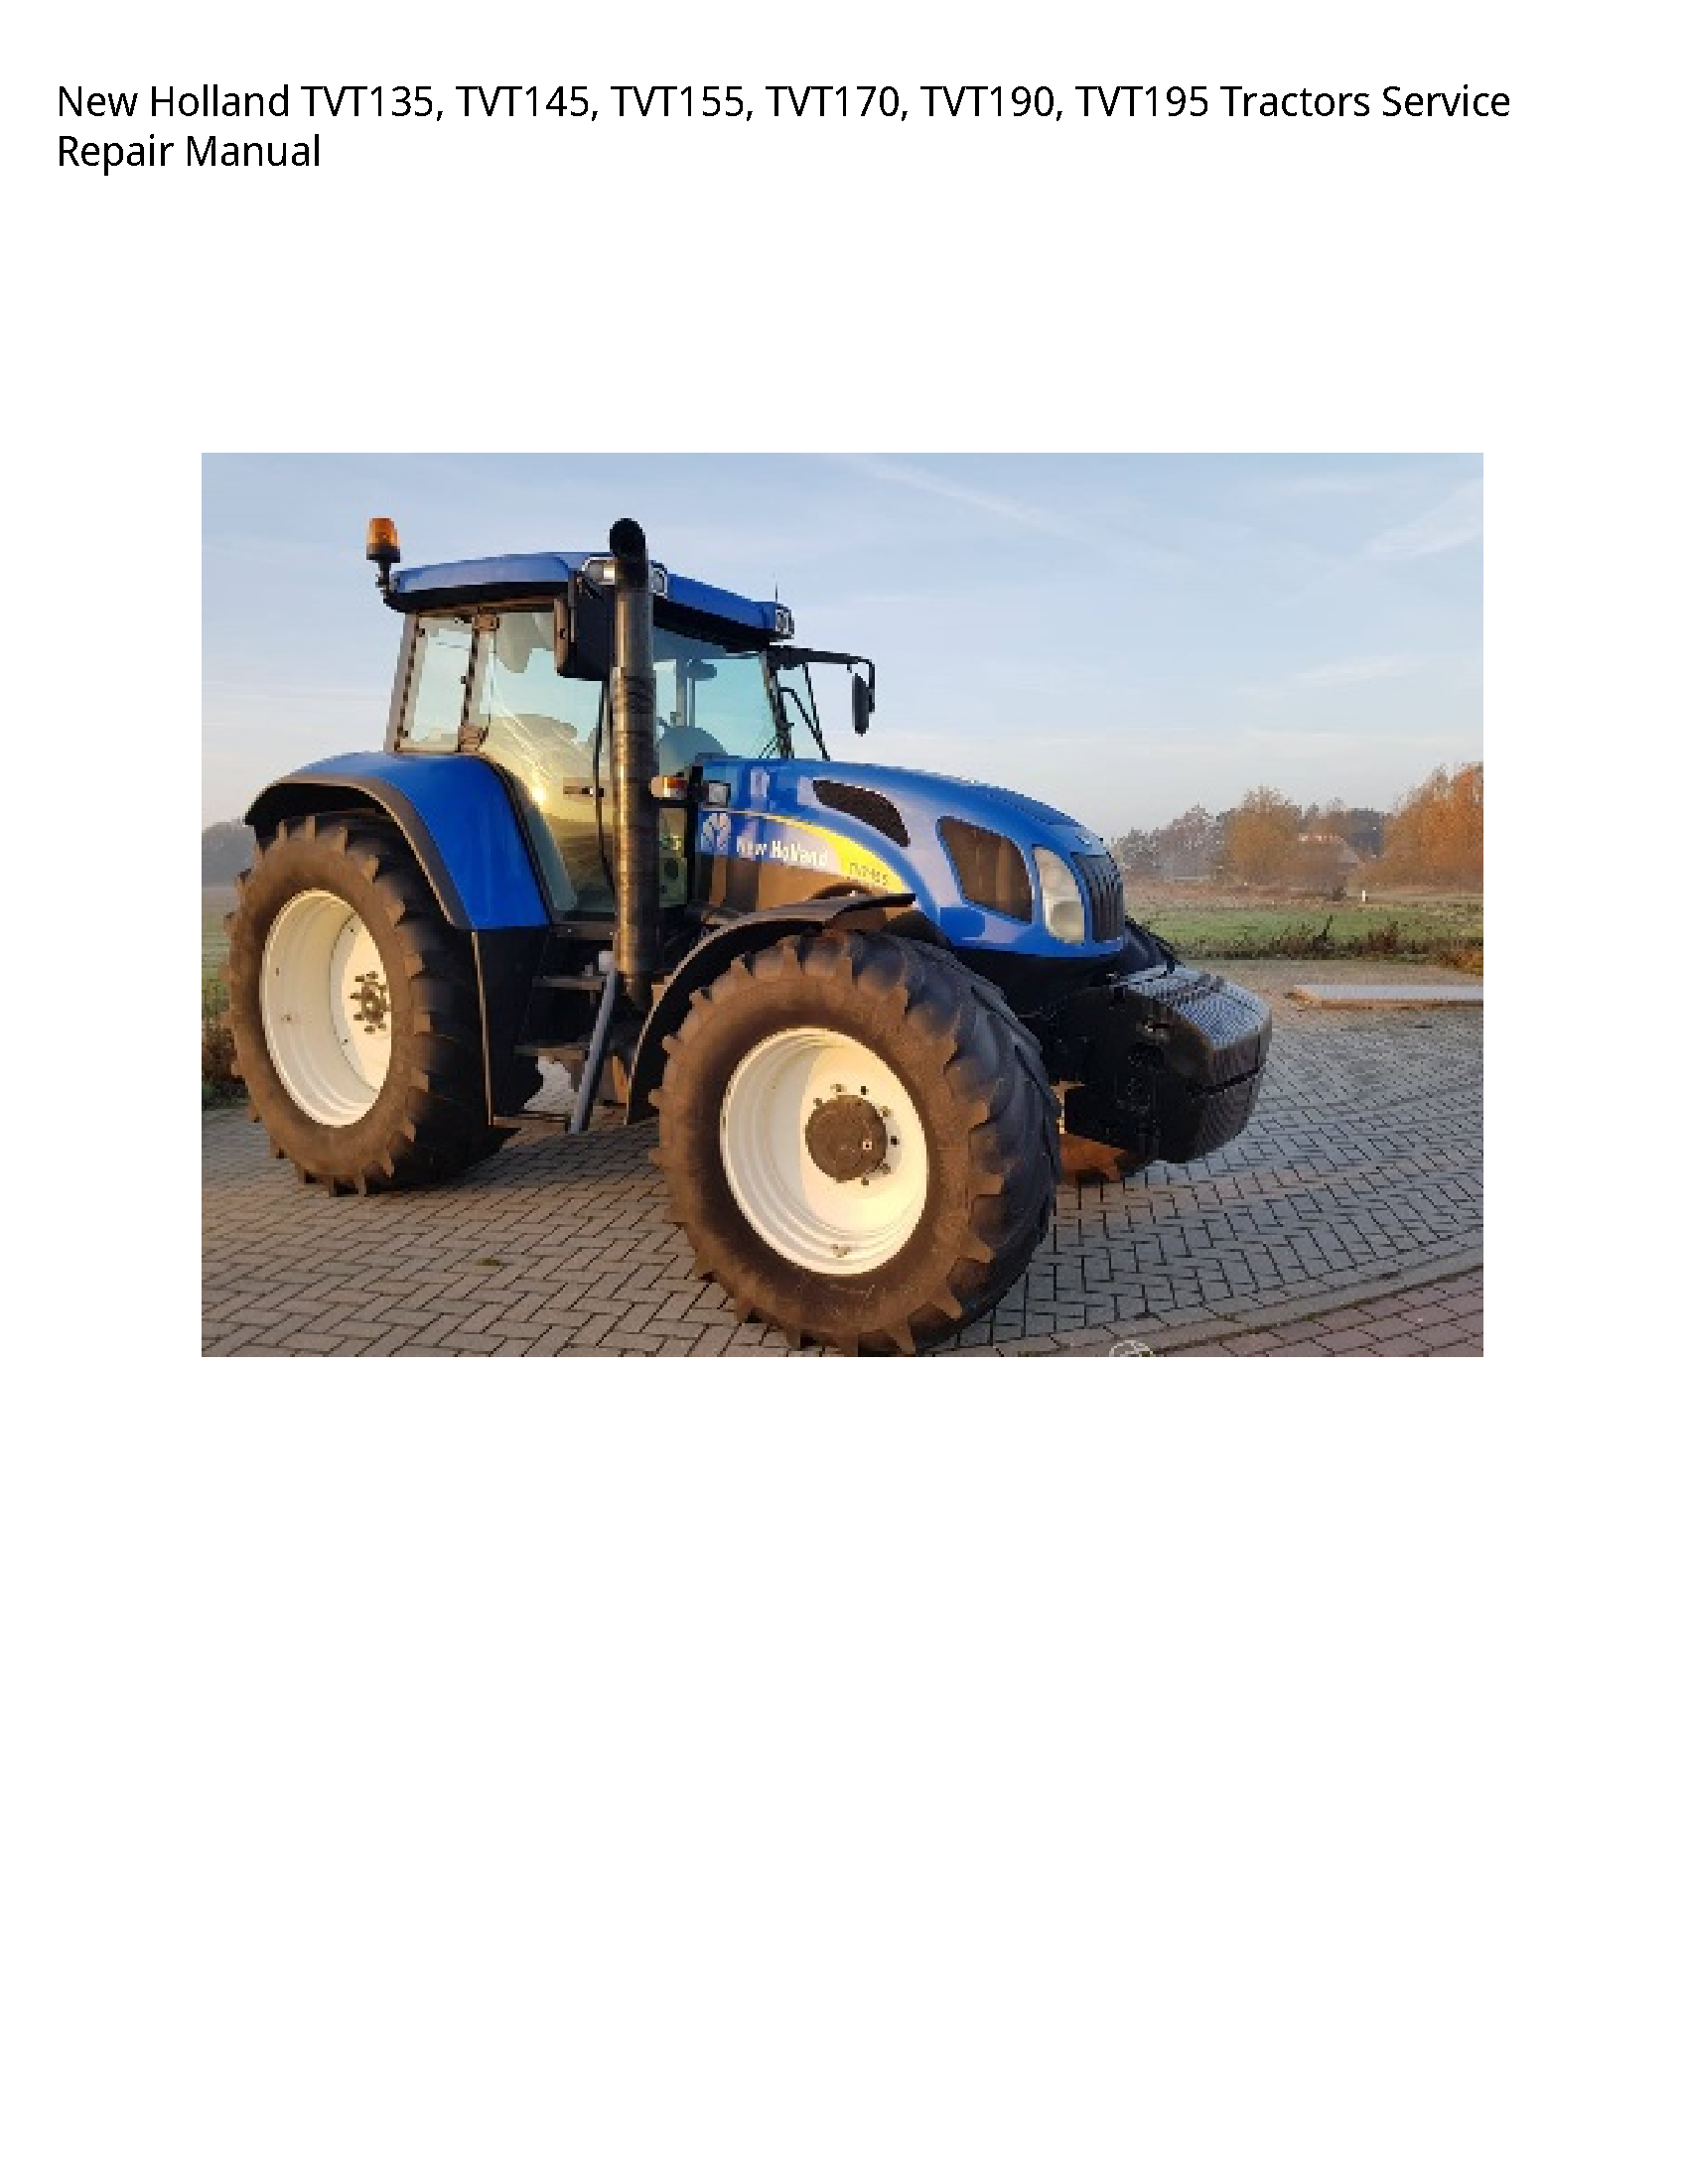 New Holland TVT135 Tractors manual